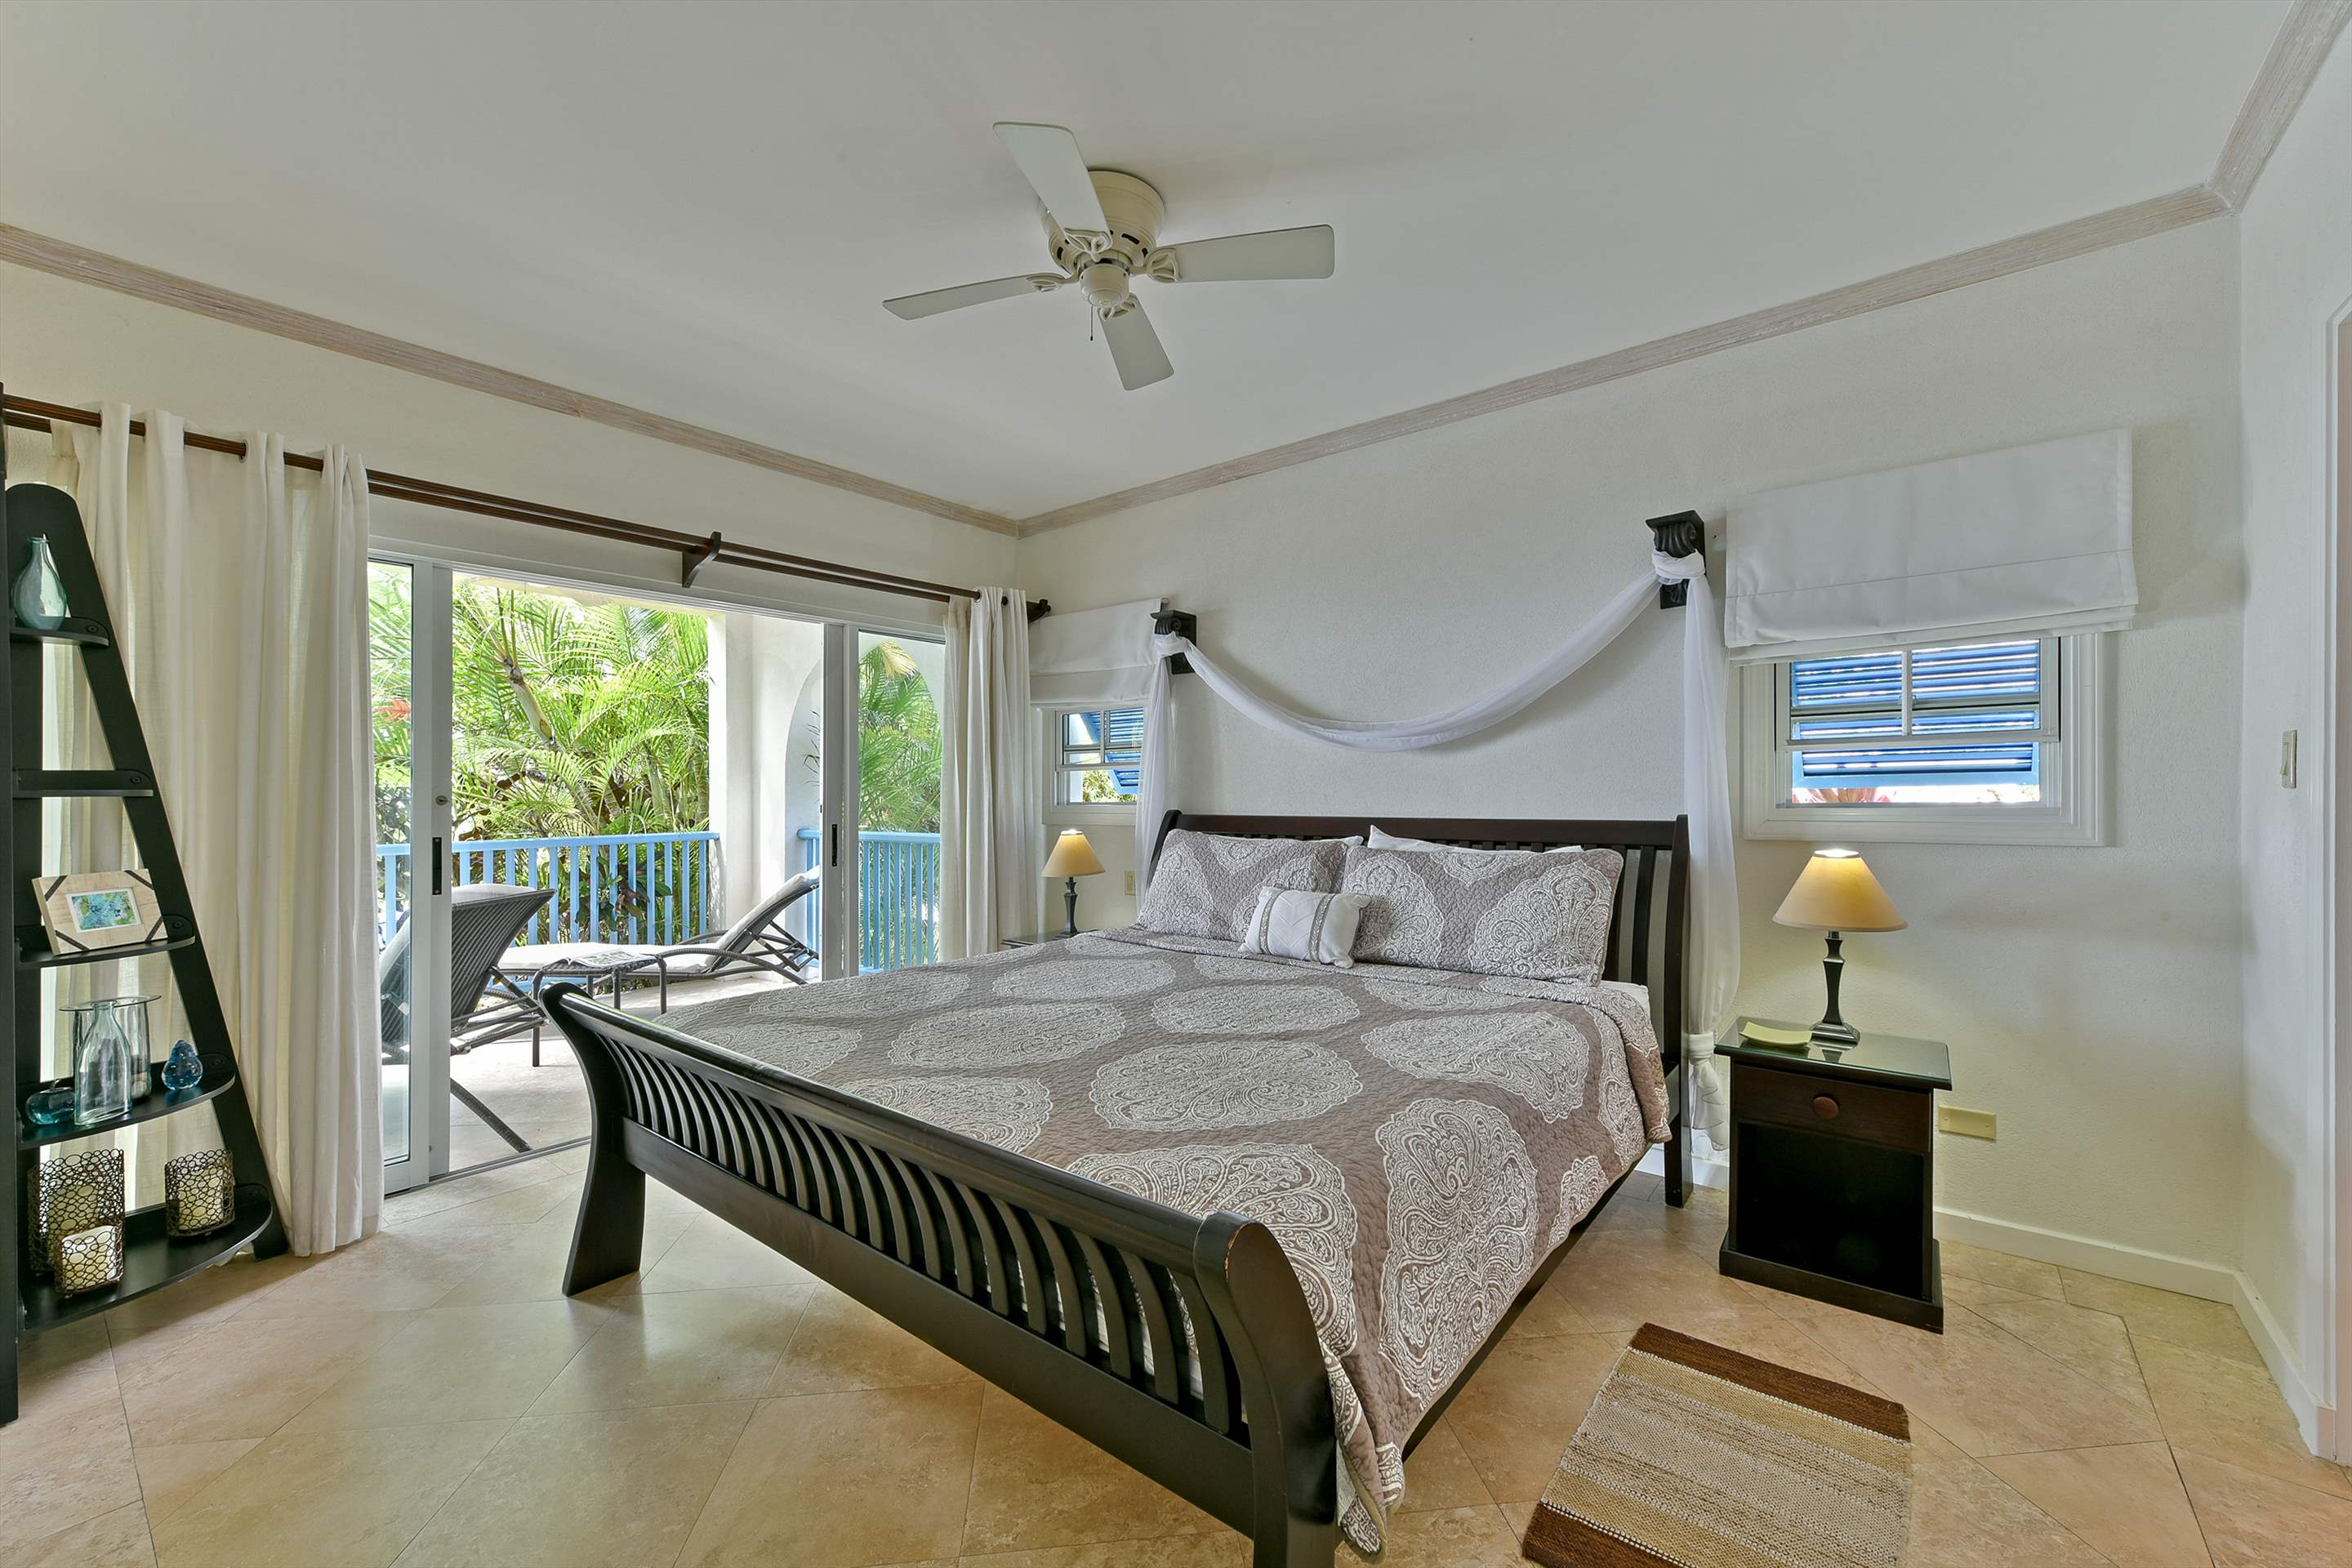 Maxwell Beach Villas 101, 2 bedroom, 2 bedroom apartment in St. Lawrence Gap & South Coast, Barbados Photo #12